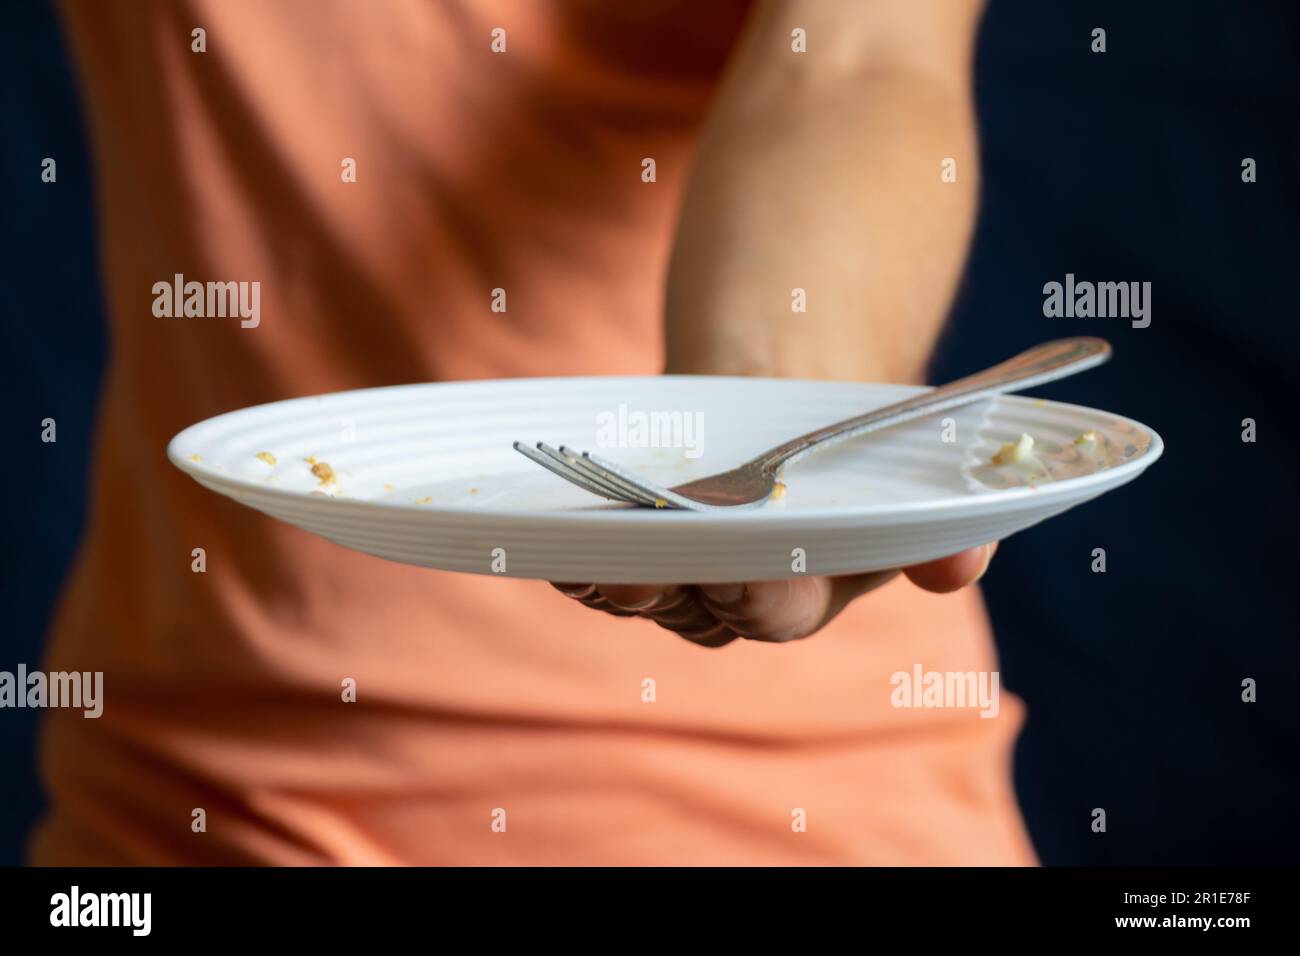 assiette blanche sale avec une fourchette dans la main d'une fille Banque D'Images